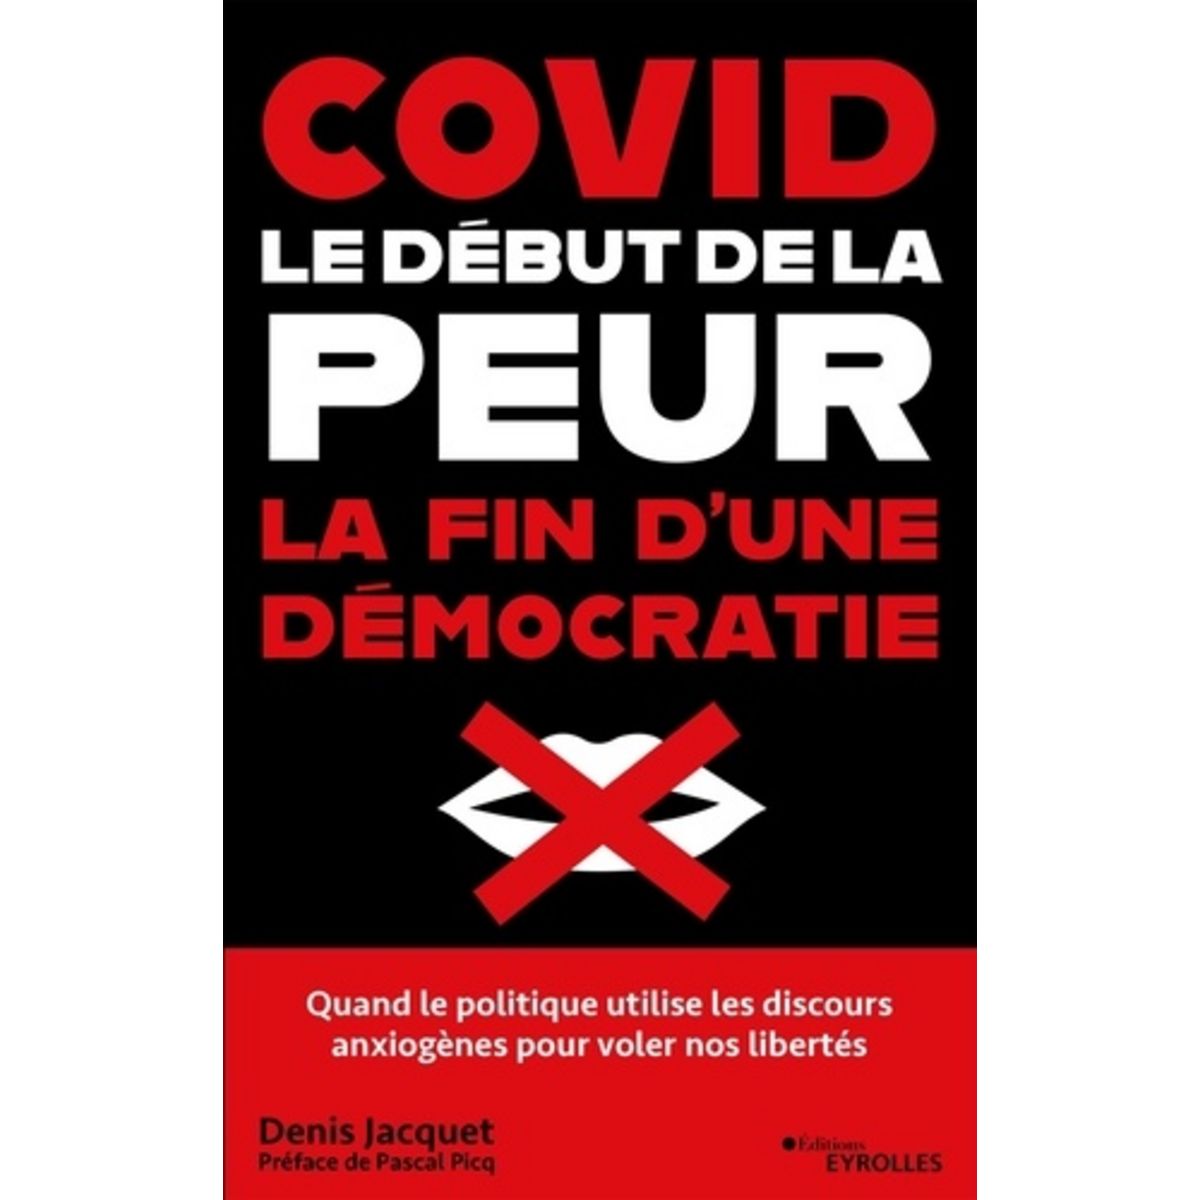  COVID : LE DEBUT DE LA PEUR, LA FIN D'UNE DEMOCRATIE. COMMENT LES DISCOURS ANXIOGENES ONT FAIT TOMBER L'ESPRIT DE LIBERTE, Jacquet Denis